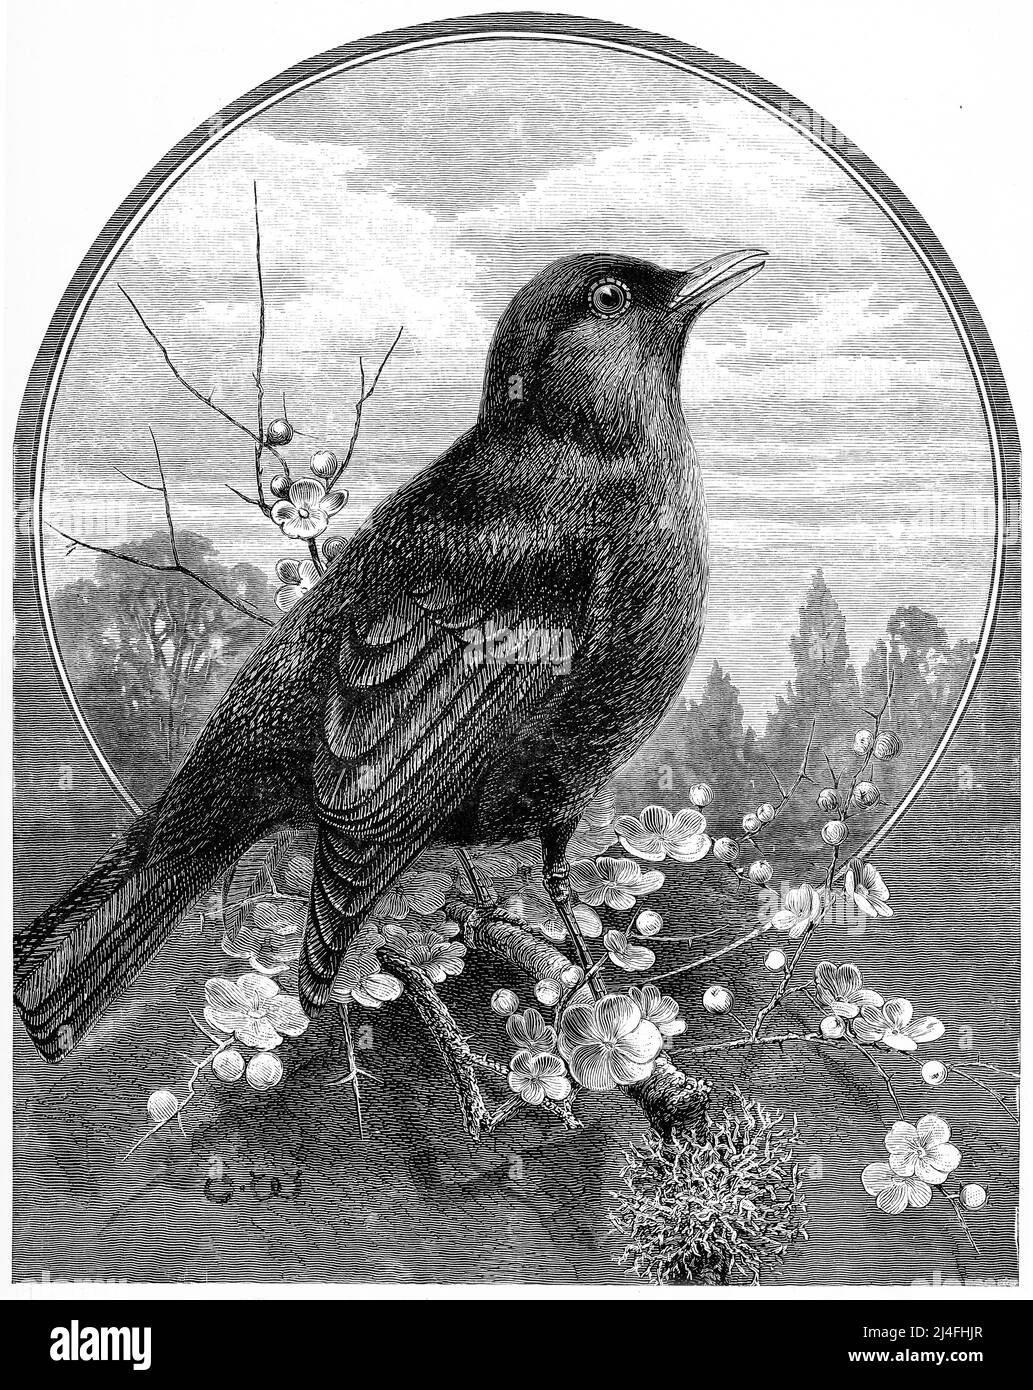 Engraving of a songbird Stock Photo